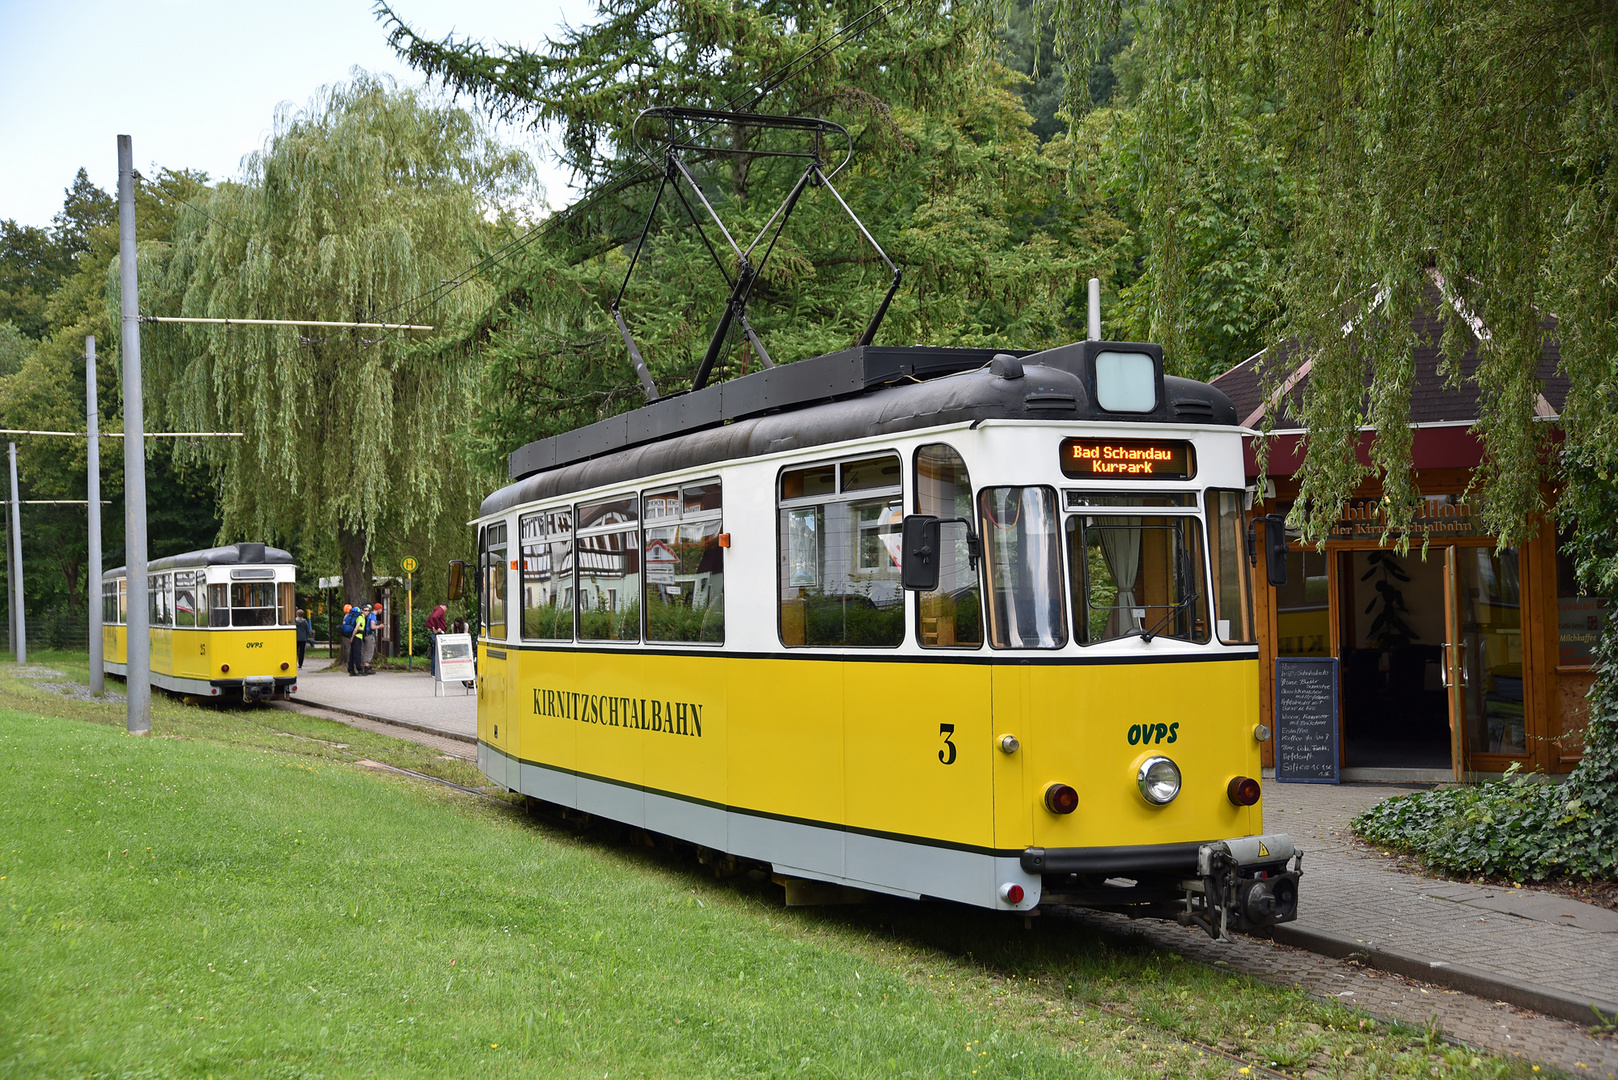 Kirnitzschtalbahn - OVPS